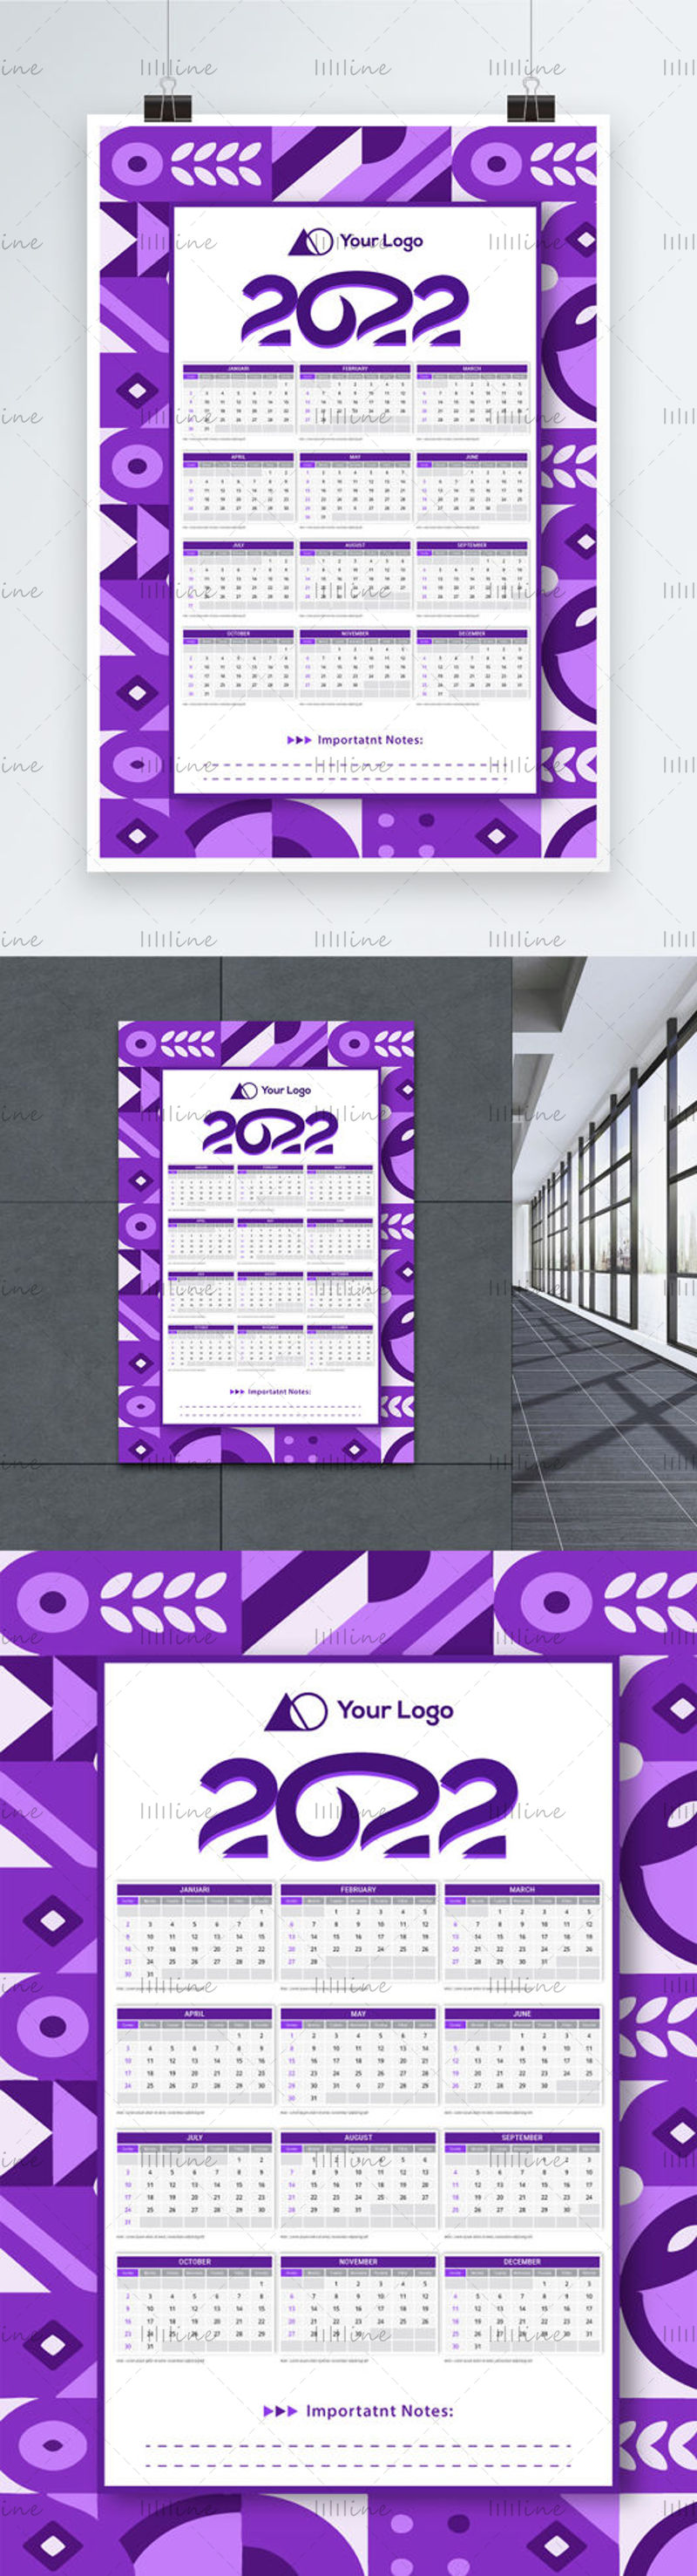 Plantilla de banner de calendario temático geométrico 2022